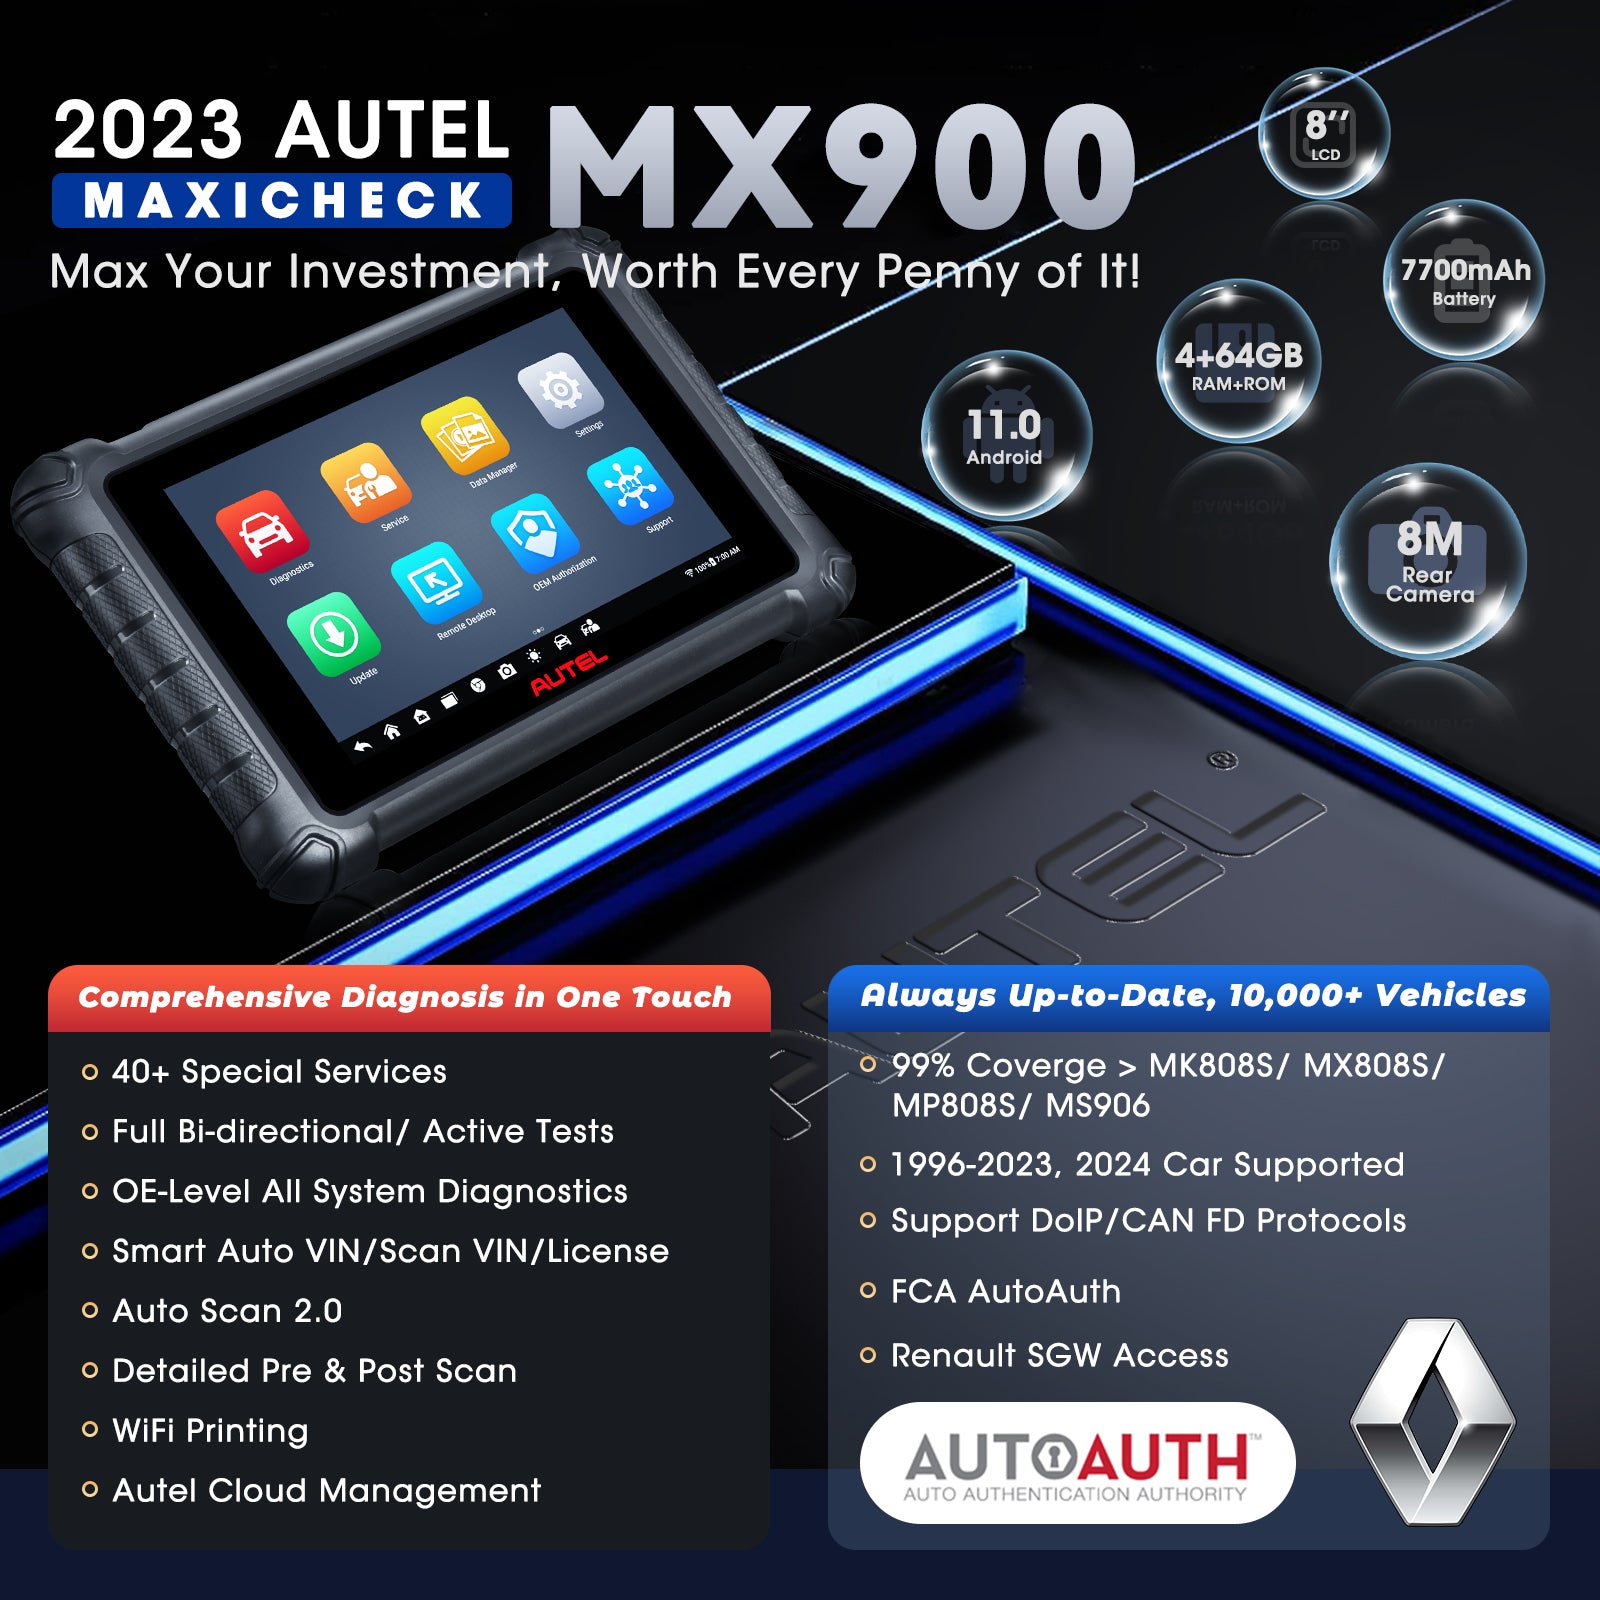 Autel Maxicheck mx900 features